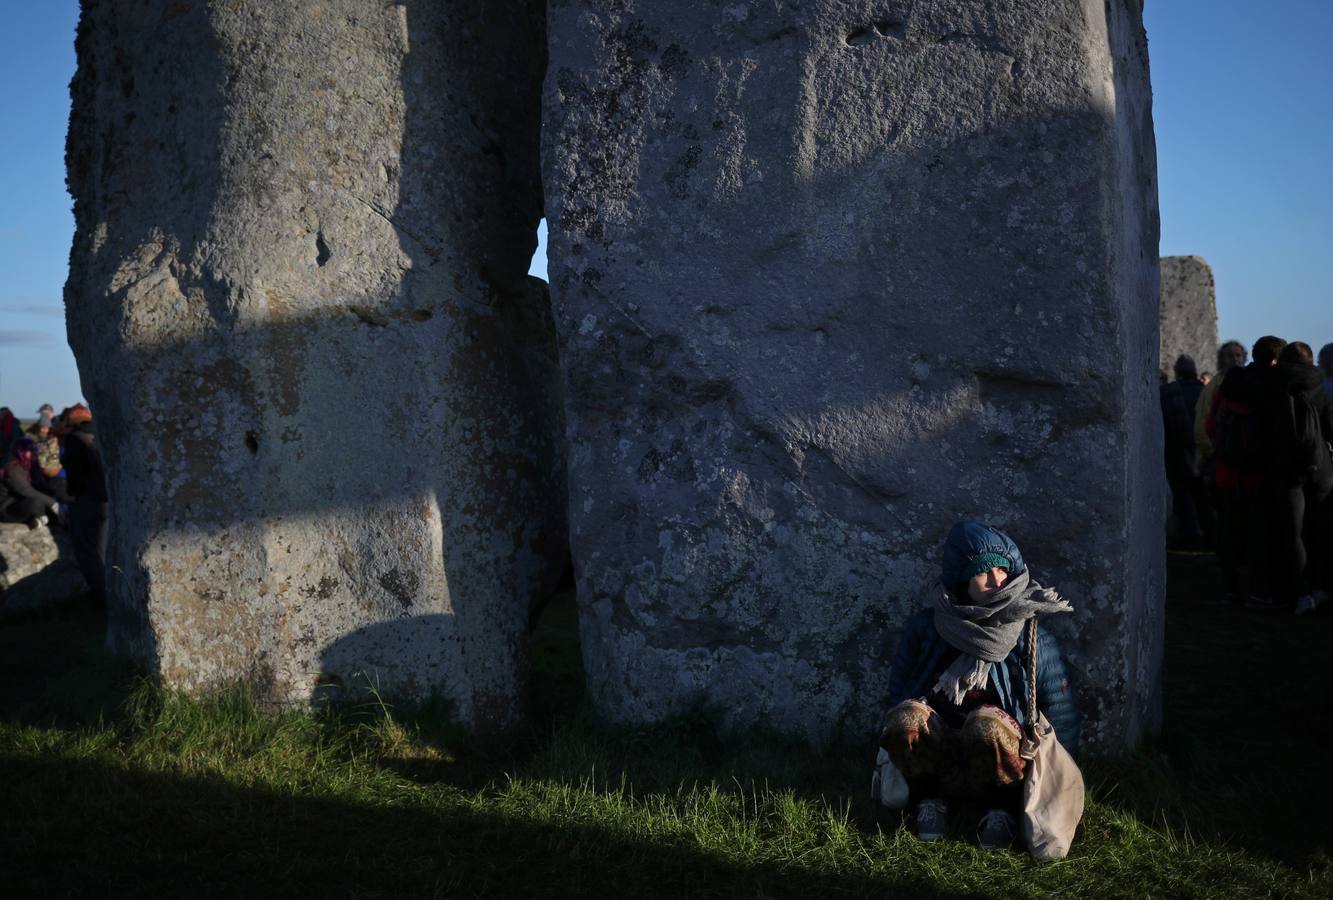 Varios entusiastas reciben el amanecer mientras participan en las celebraciones por el solsticio de verano en Stonehenge, en Wiltshire (Reino Unido). Este festival atrae anualmente a cientos de personas para celebrar el llegada del día más largo en el hemisferio norte.